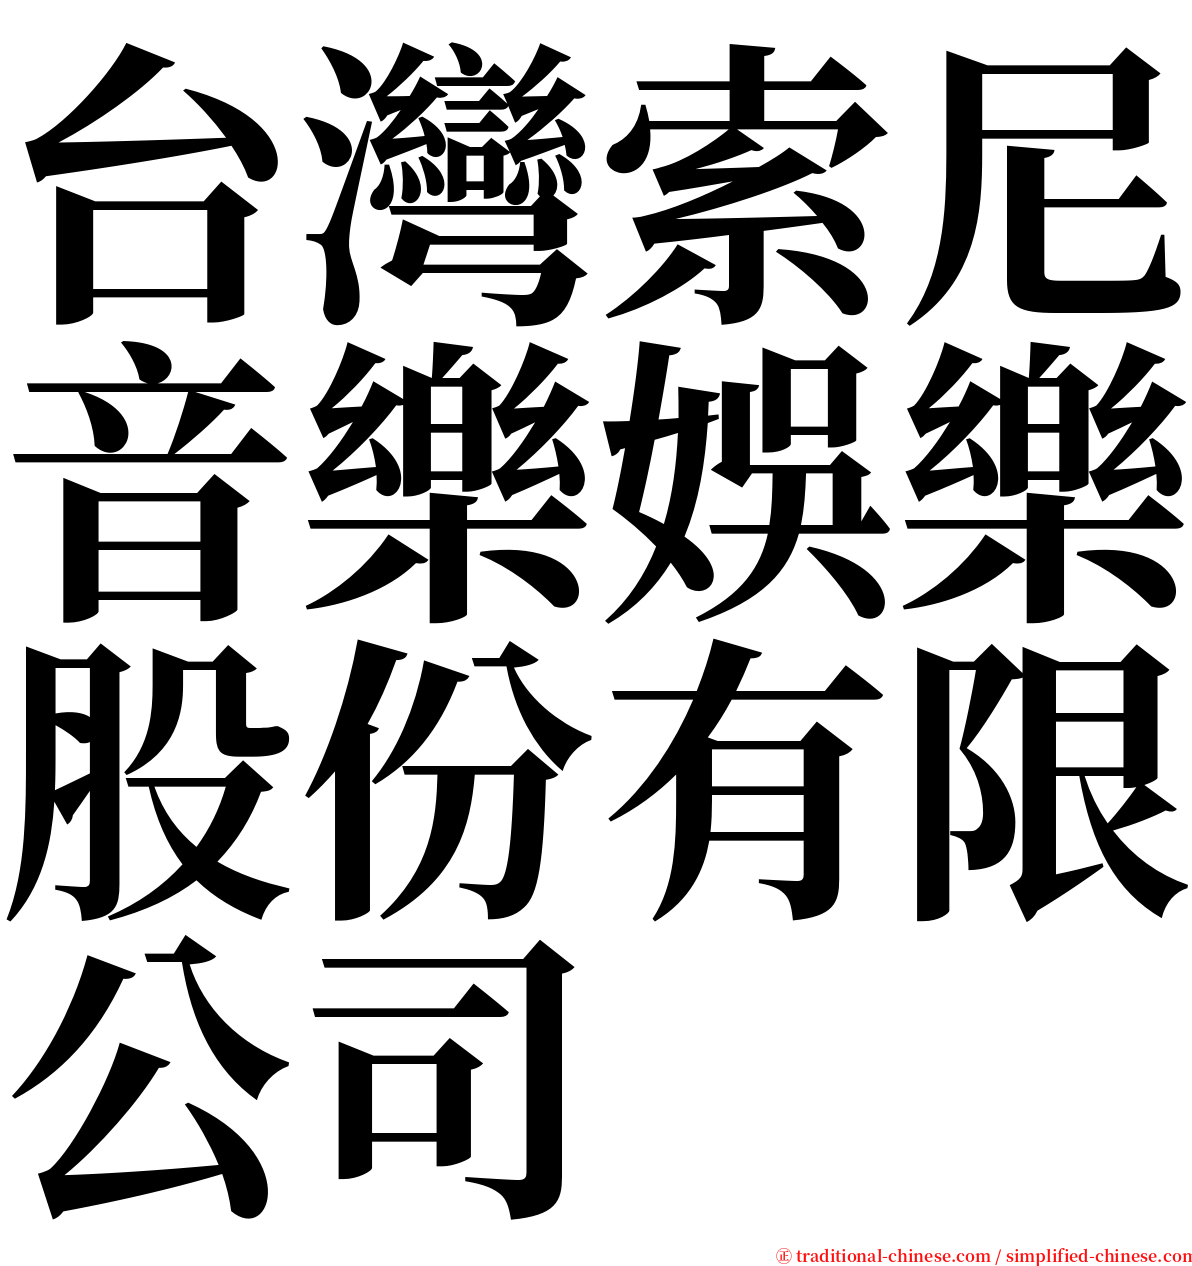 台灣索尼音樂娛樂股份有限公司 serif font